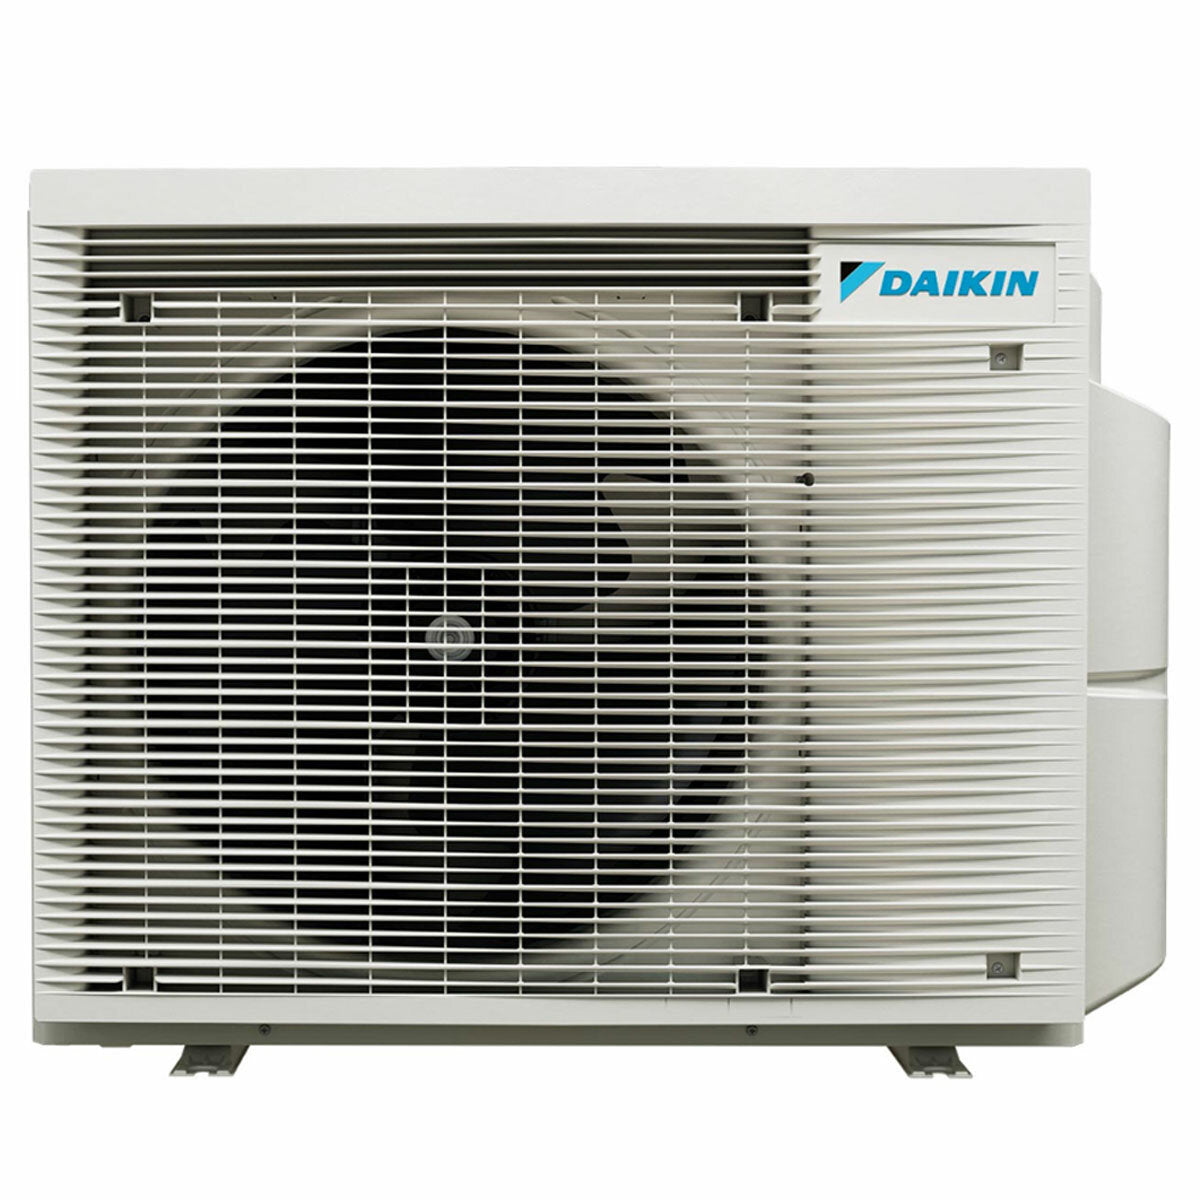 Daikin Stylish White trial split air conditioner 7000+9000+9000 BTU inverter A+++ wifi external unit 4 kW